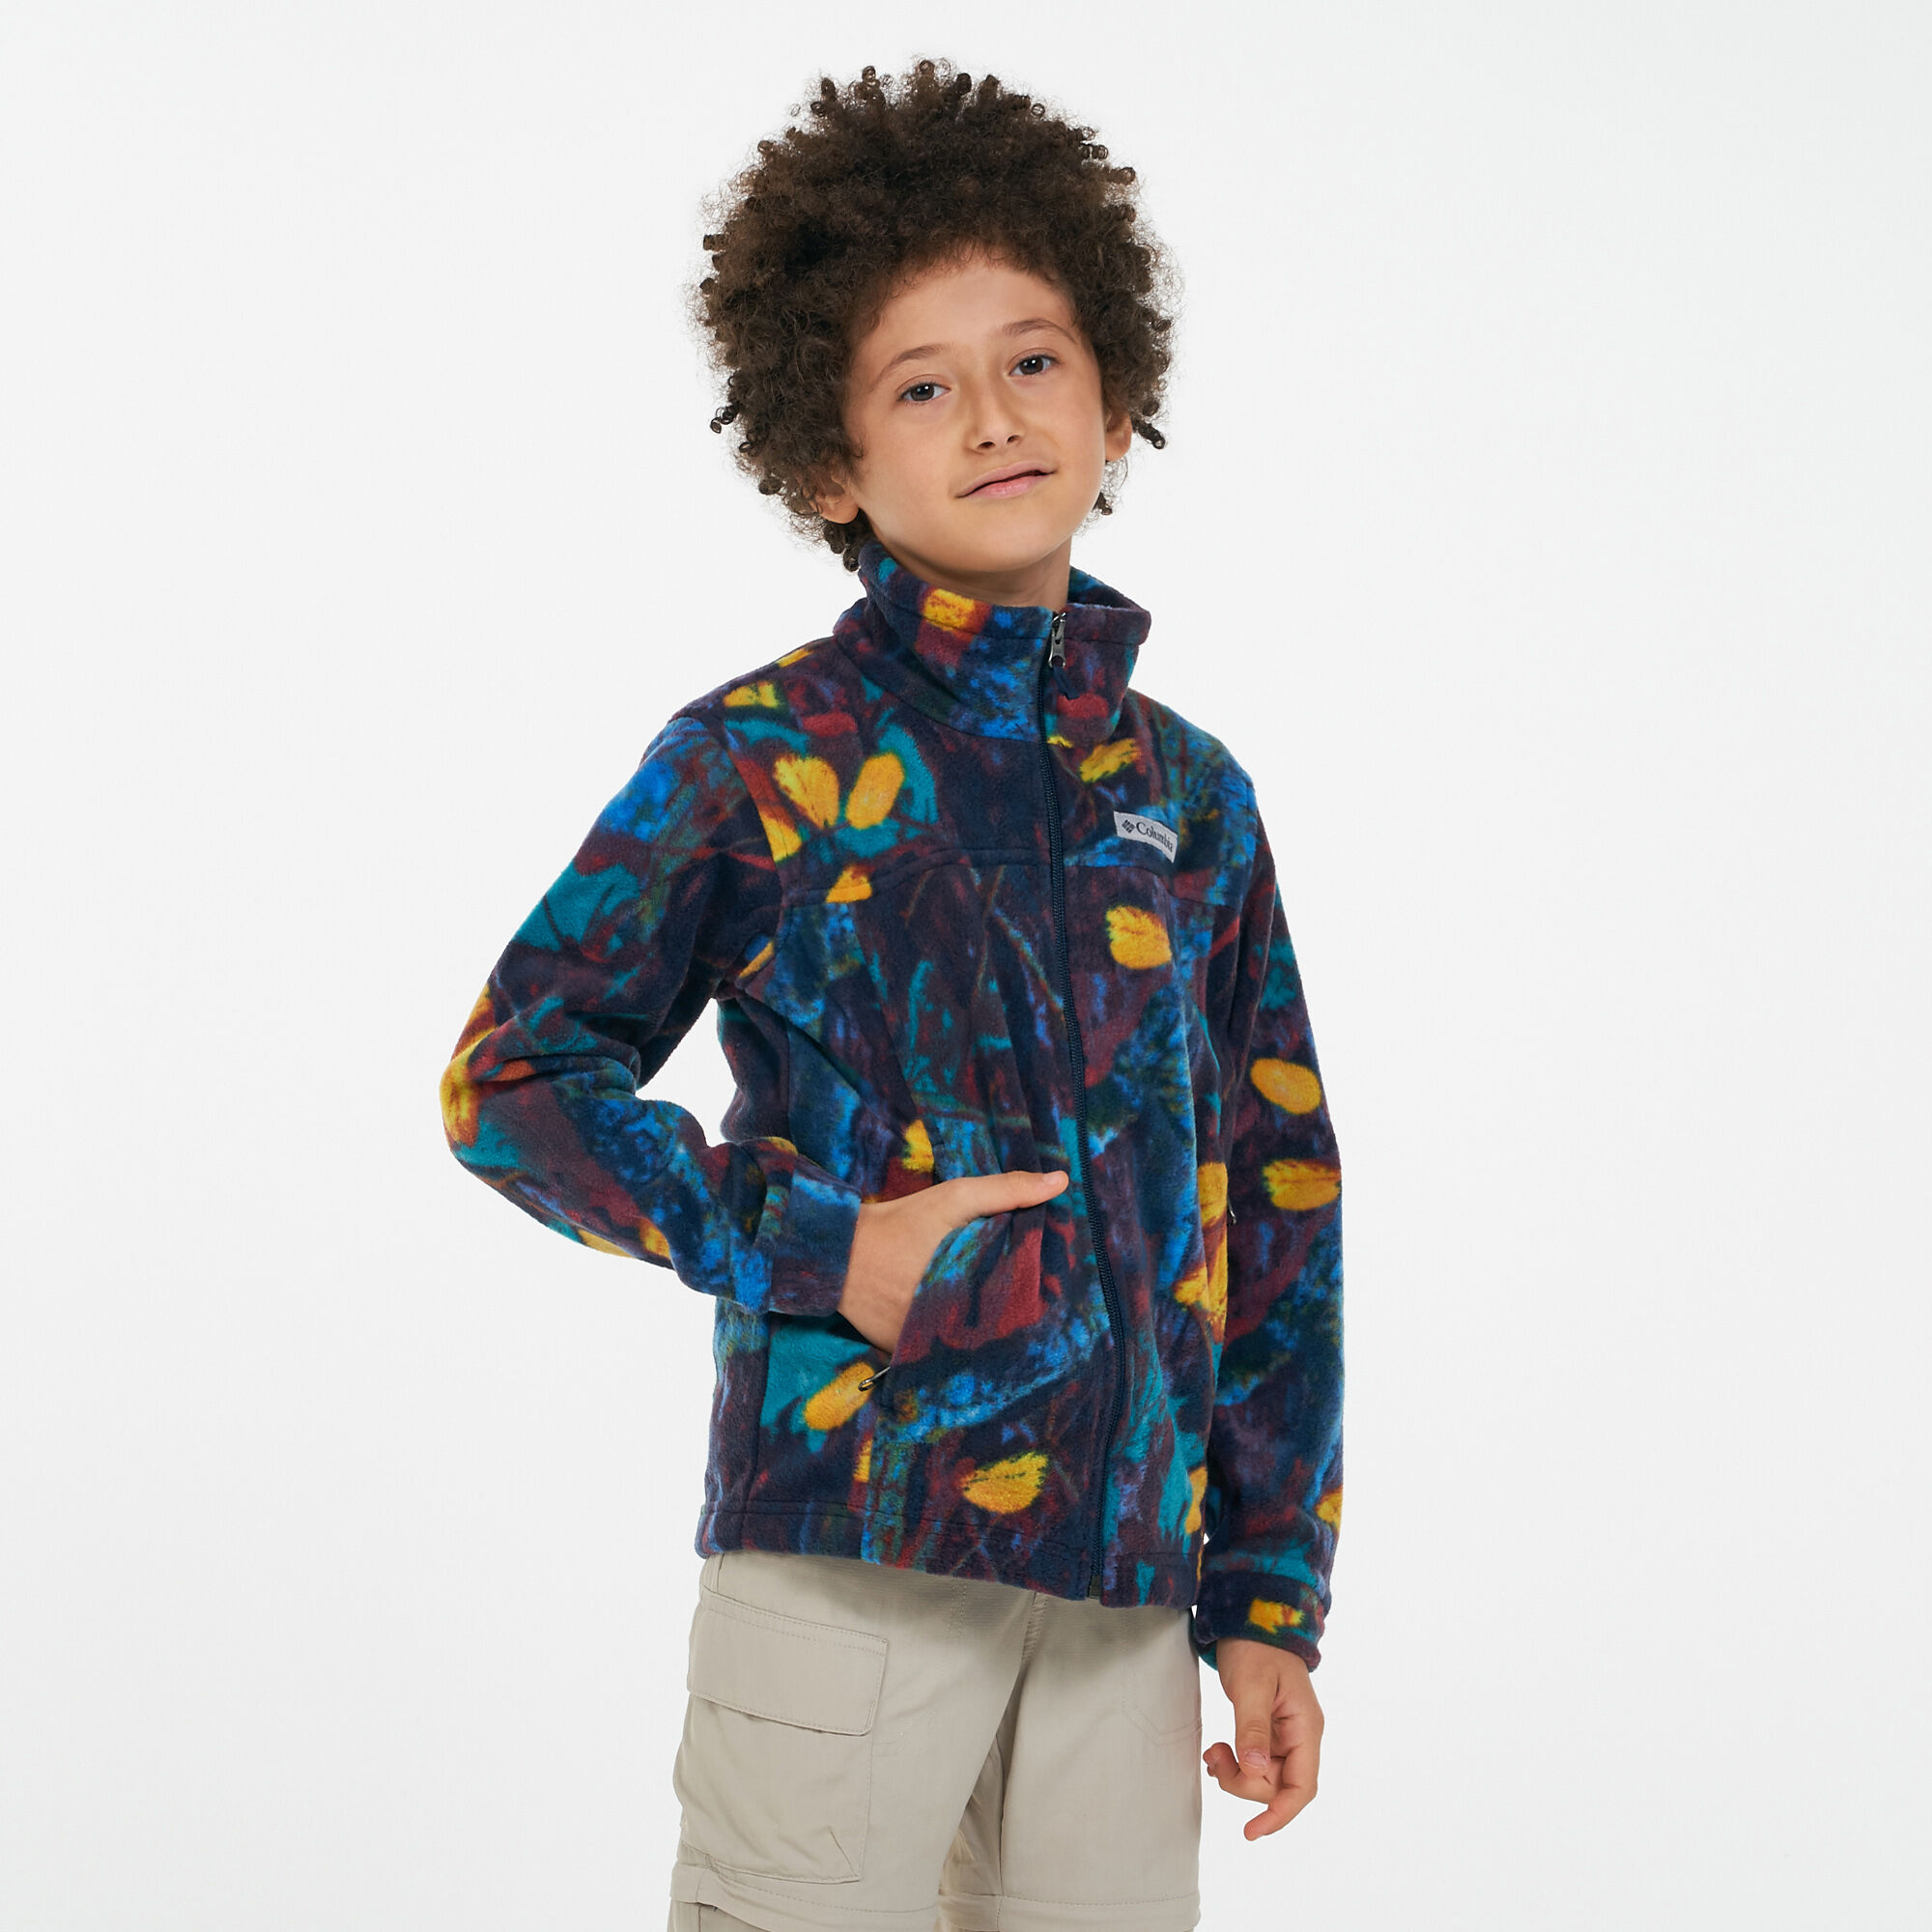 Boys' Zing™ III Printed Fleece Jacket